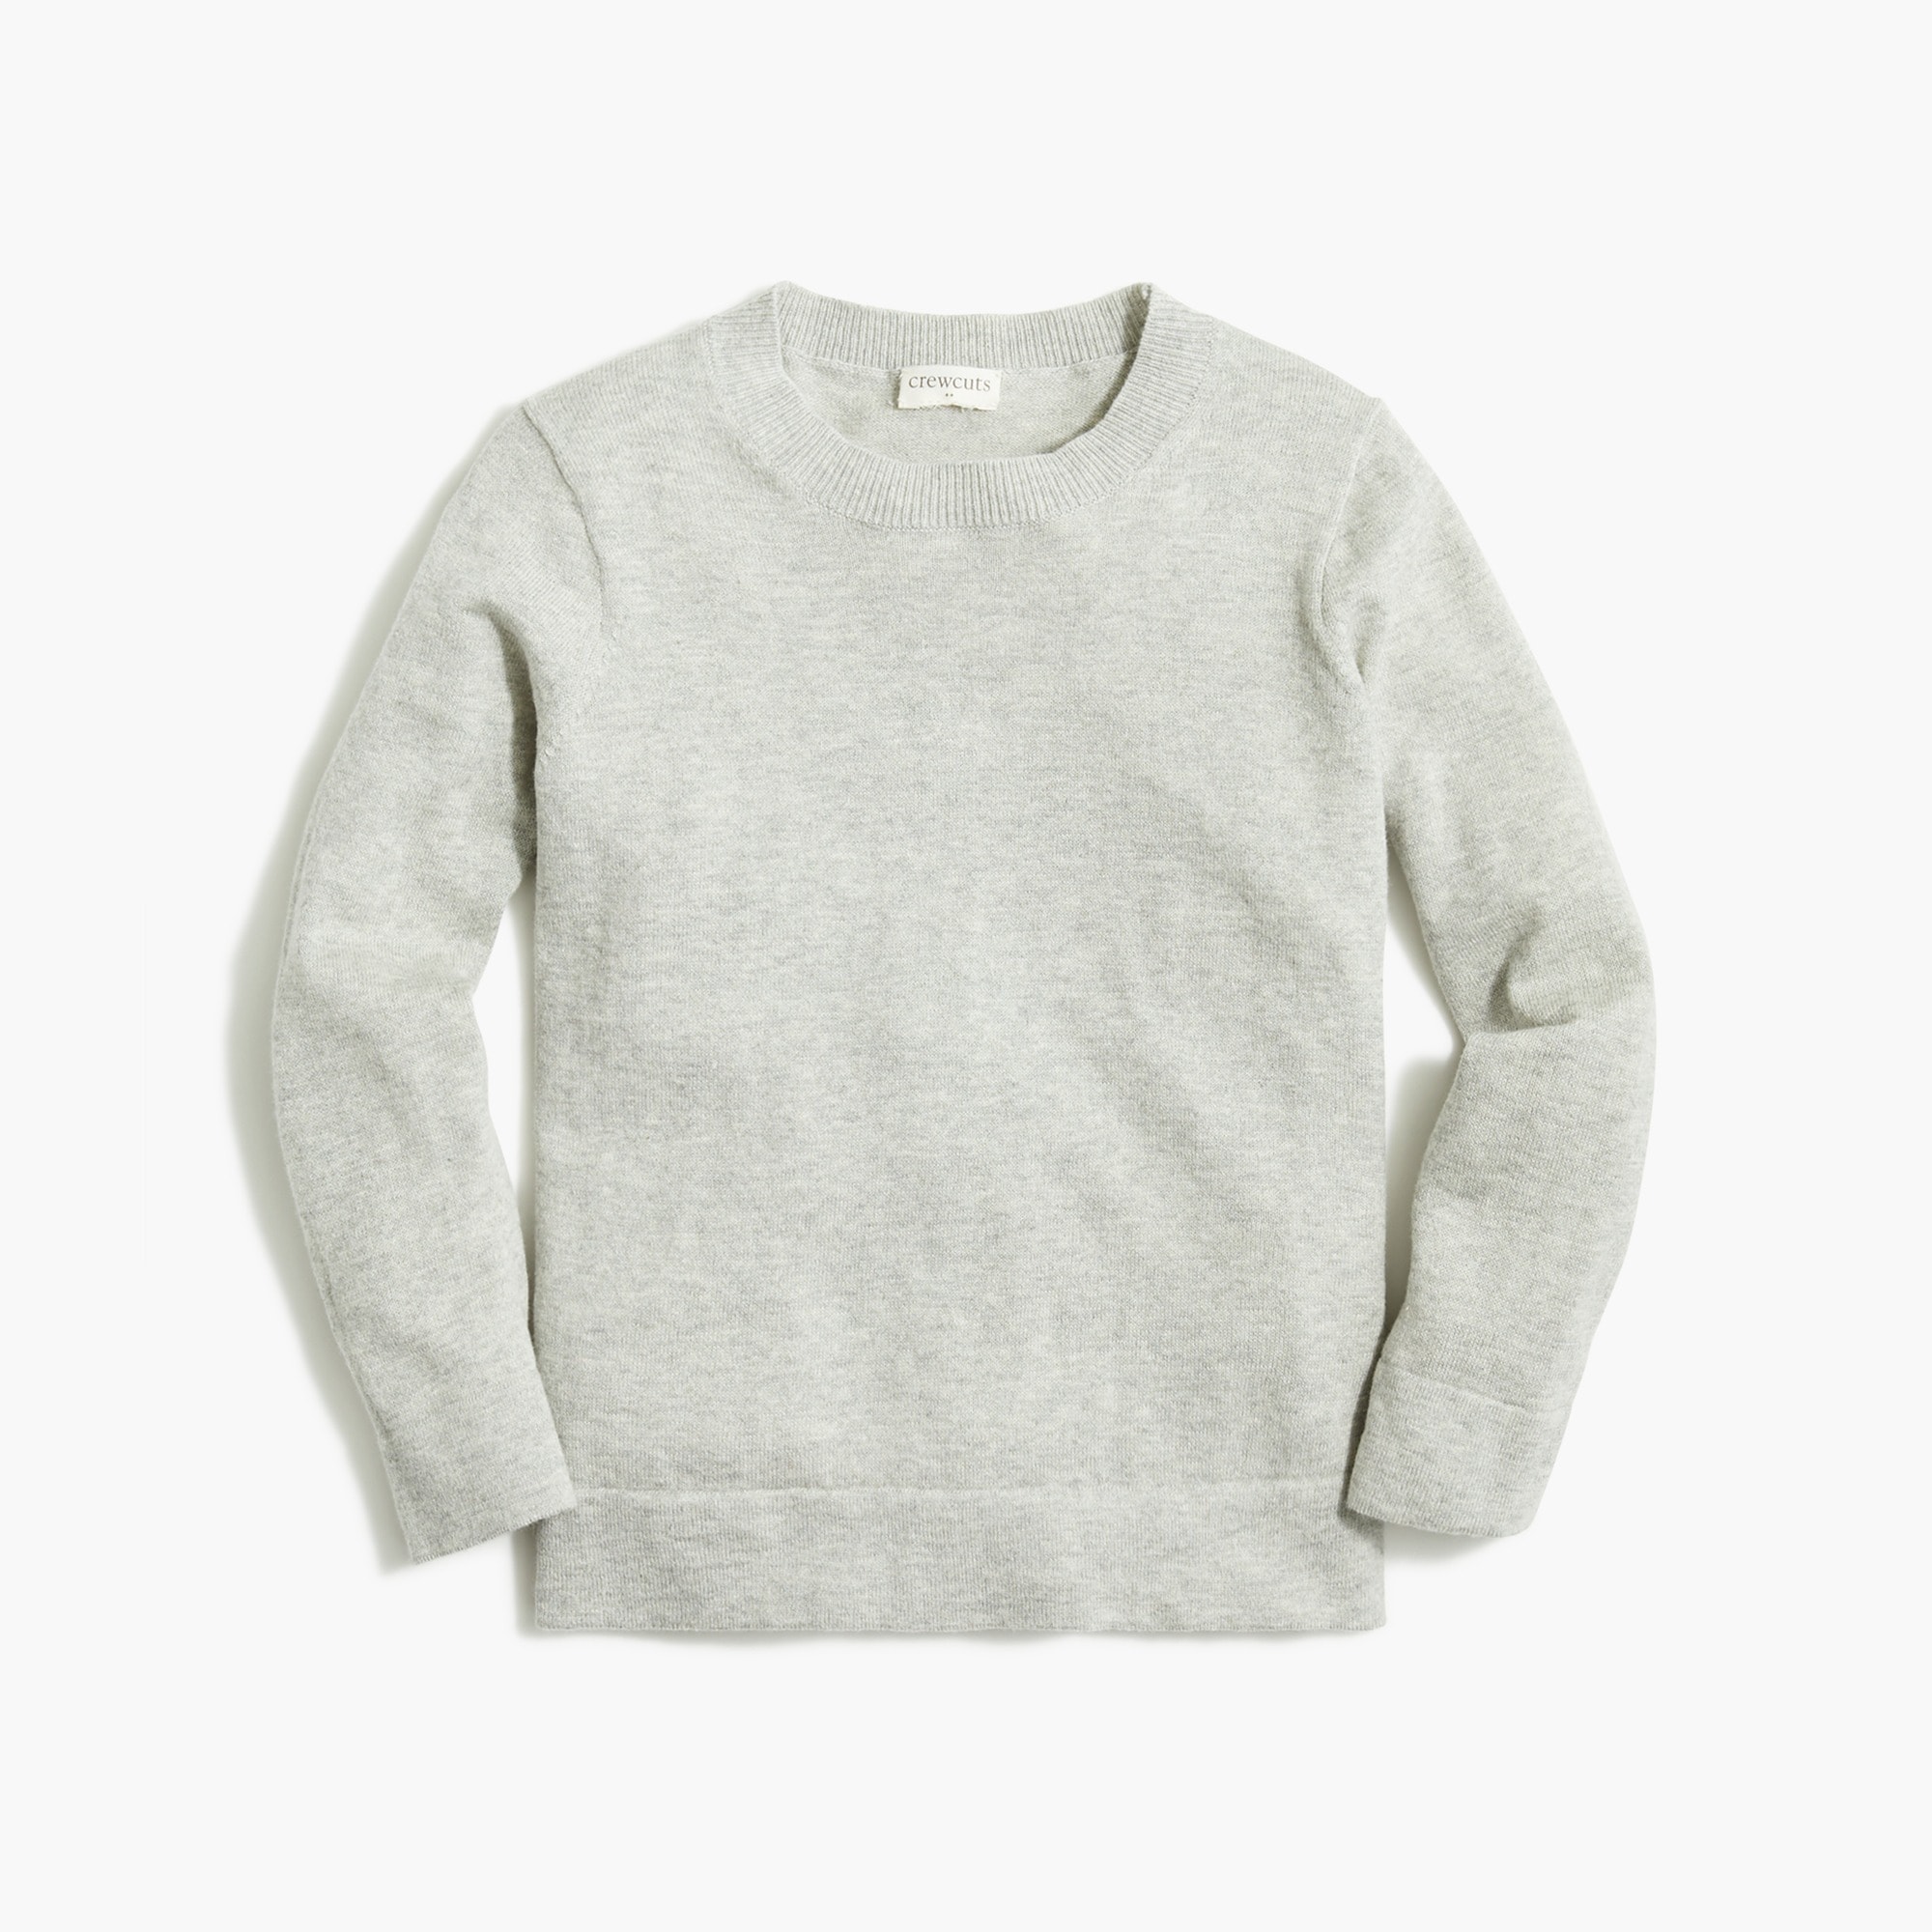  Girls' Teddie sweater